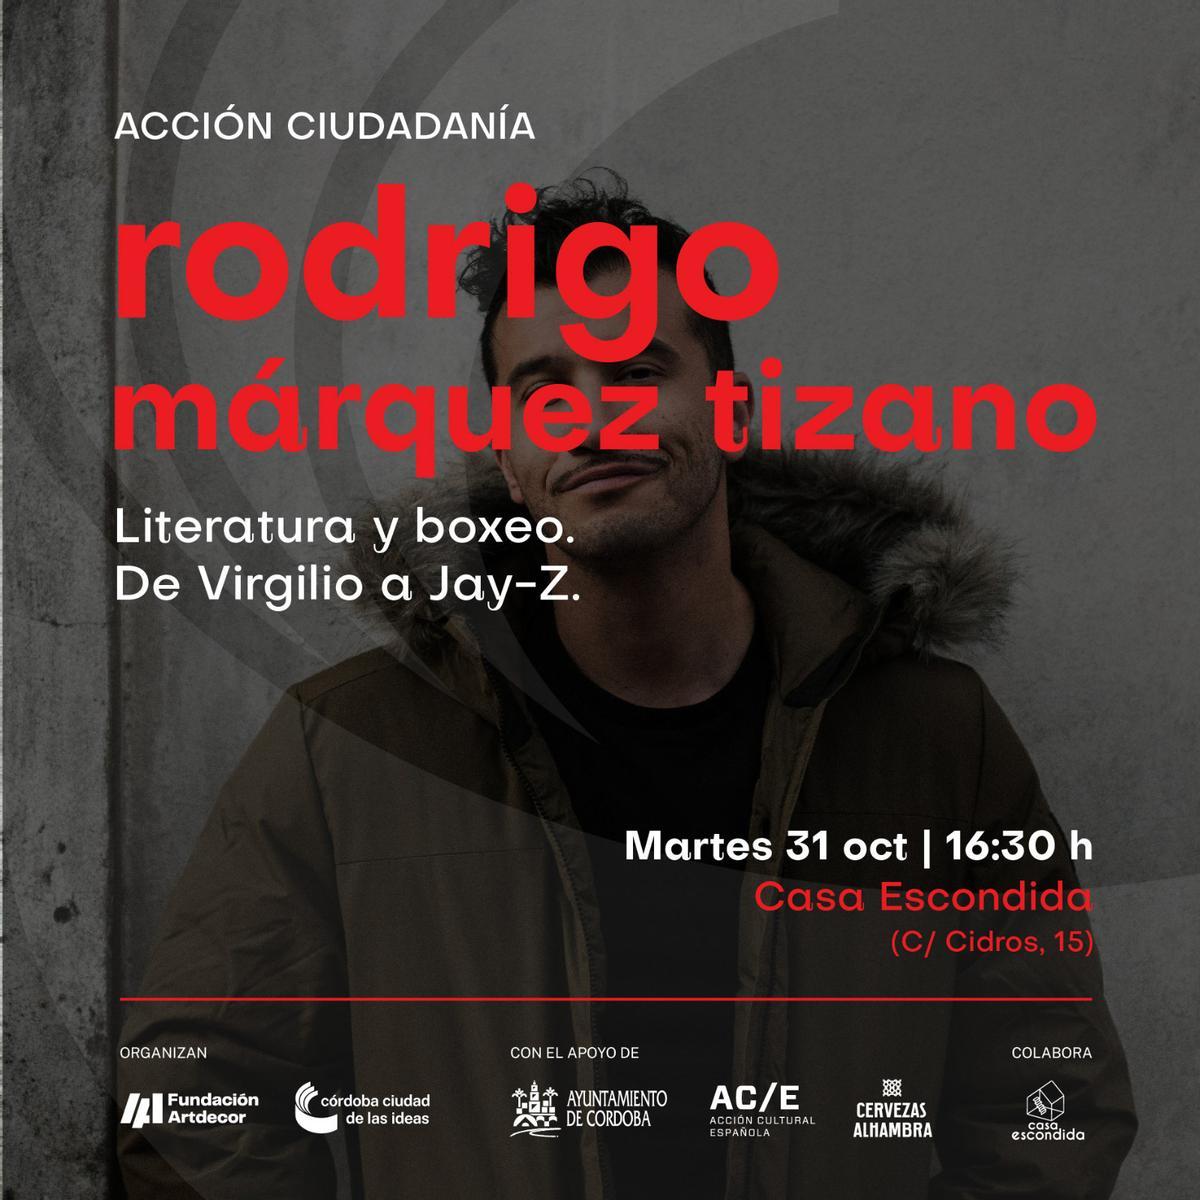 Cartel anunciador de la charla de Rodrigo Márquez.